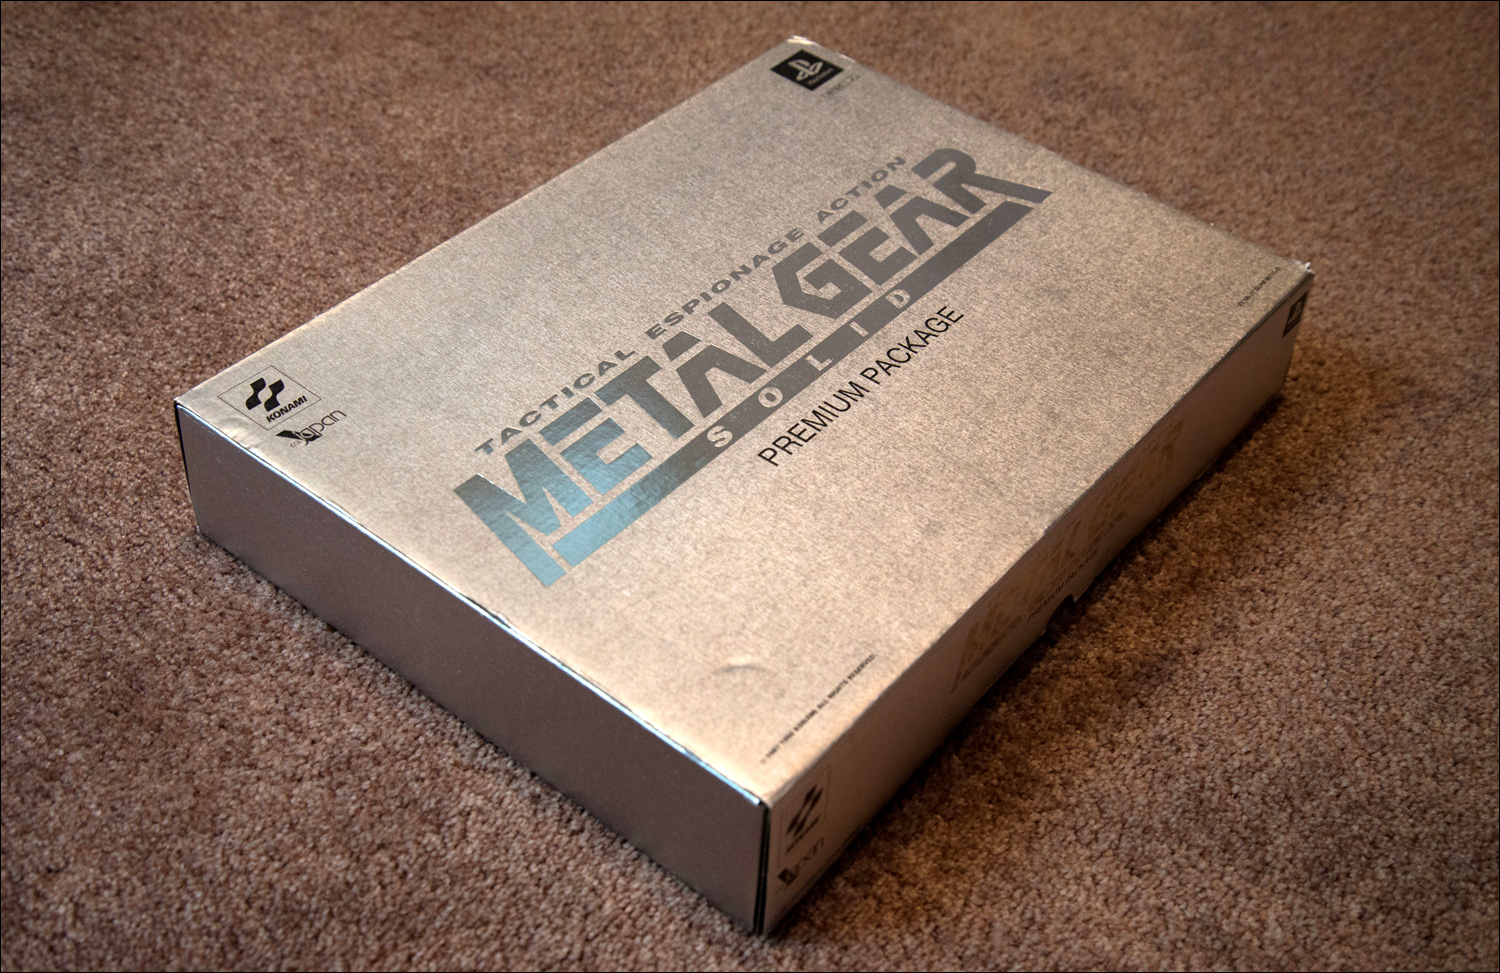 Metal-Gear-Solid-Premium-Package